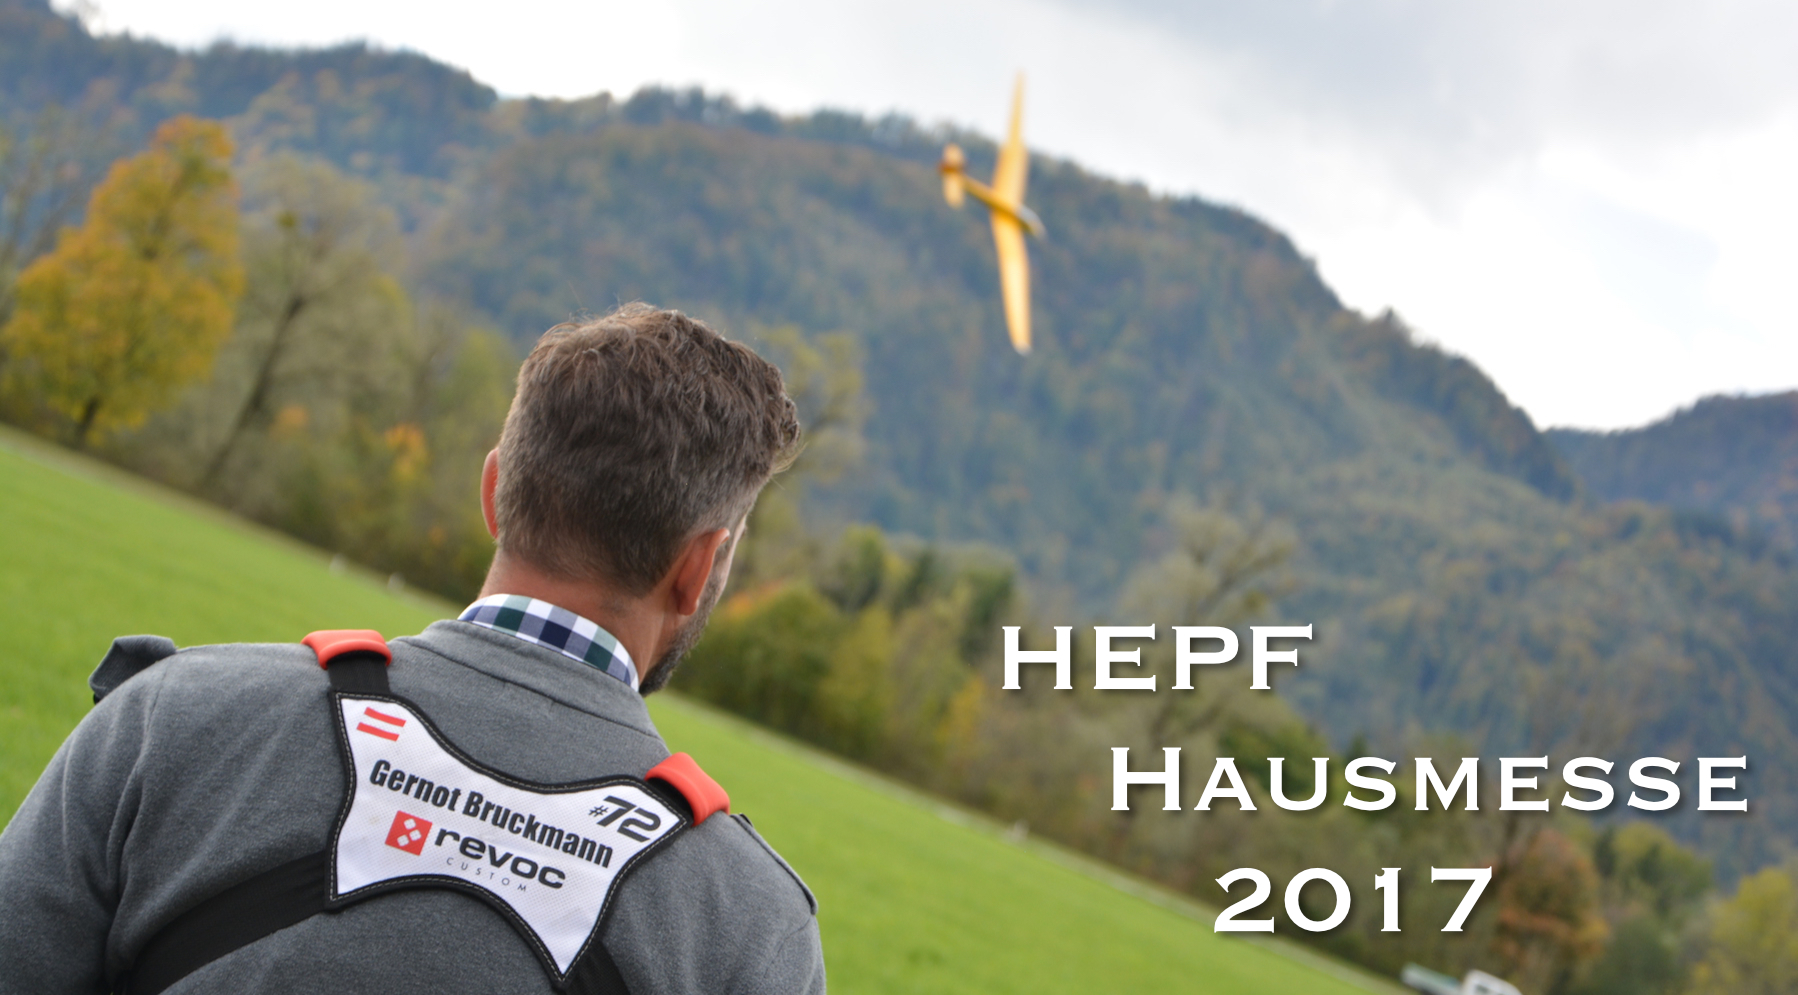 HEPF hausmesse 2017 v2